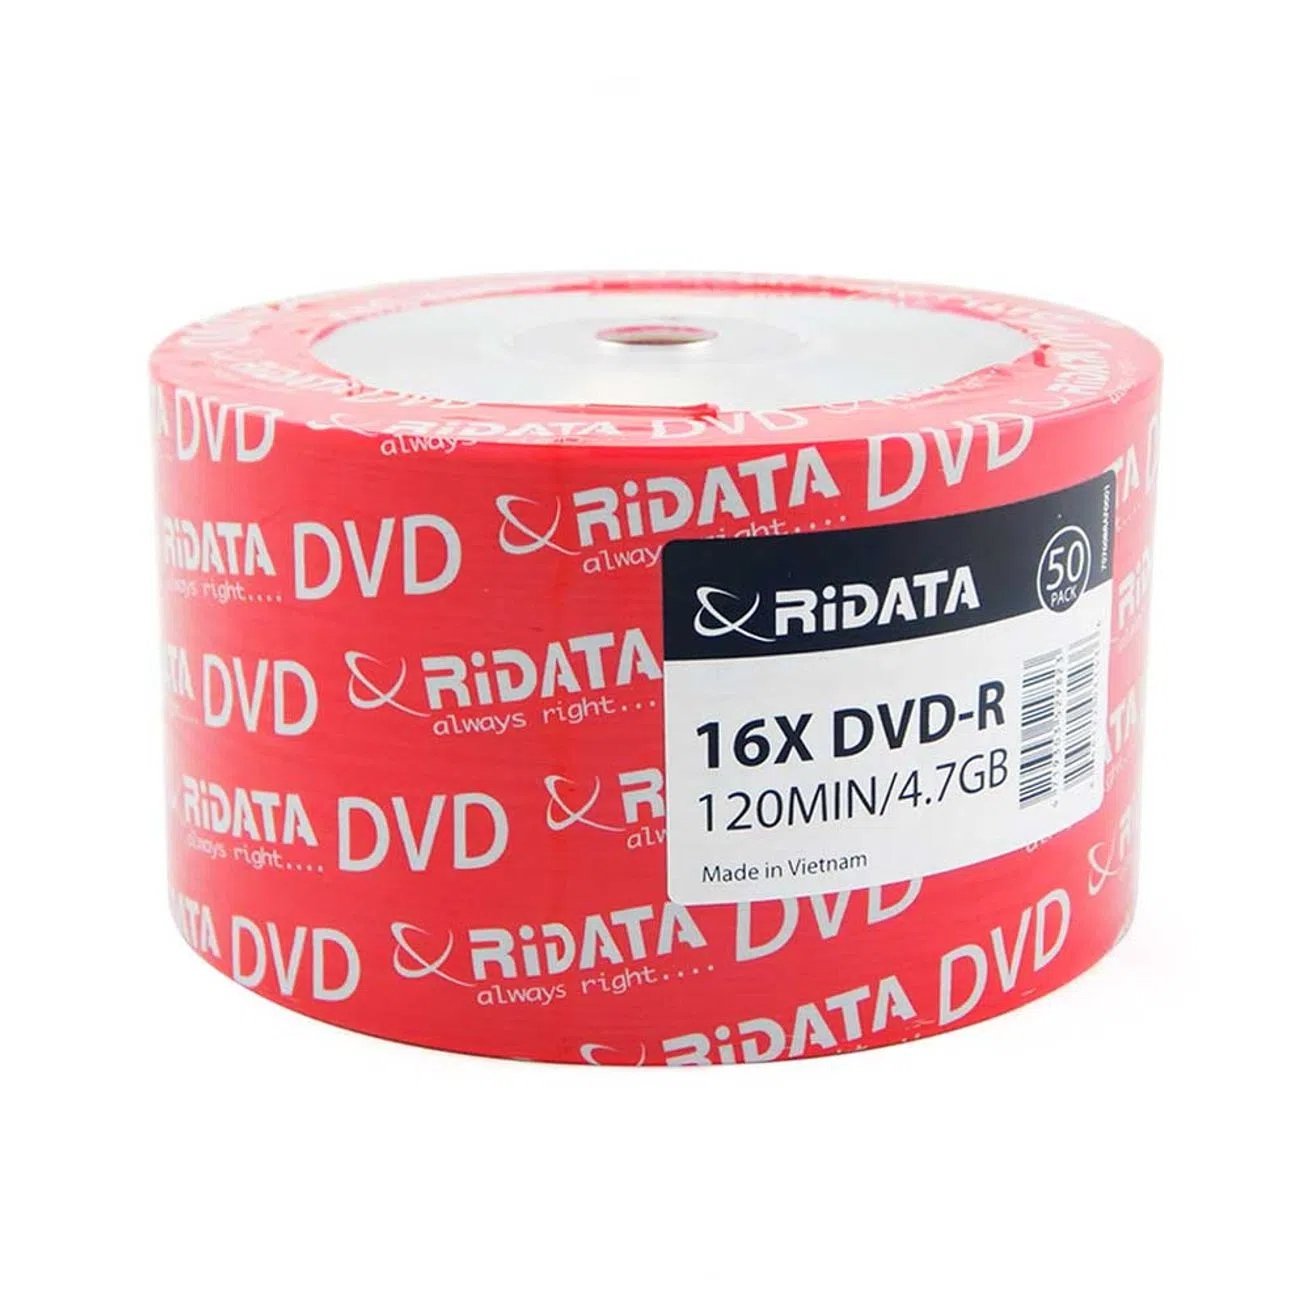 RiData แผ่นDVD-R 16X 120MIN 4.7GB 1 หลอด = 50 แผ่น